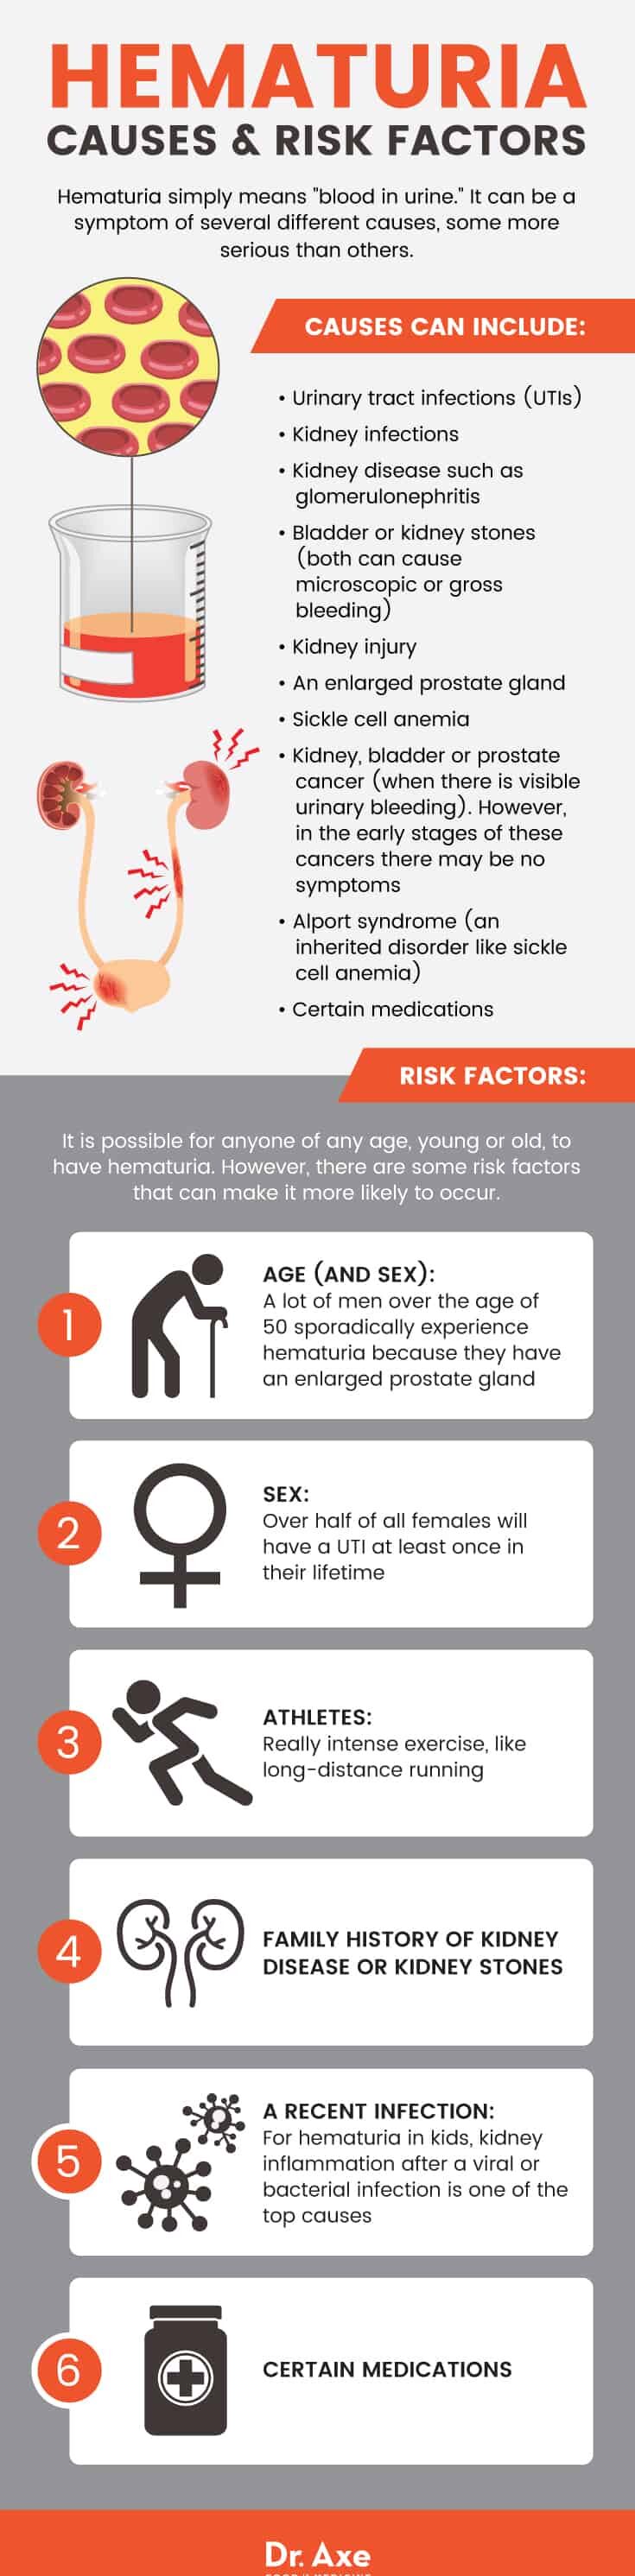 Hematuria causes & risk factors - Dr. Axe